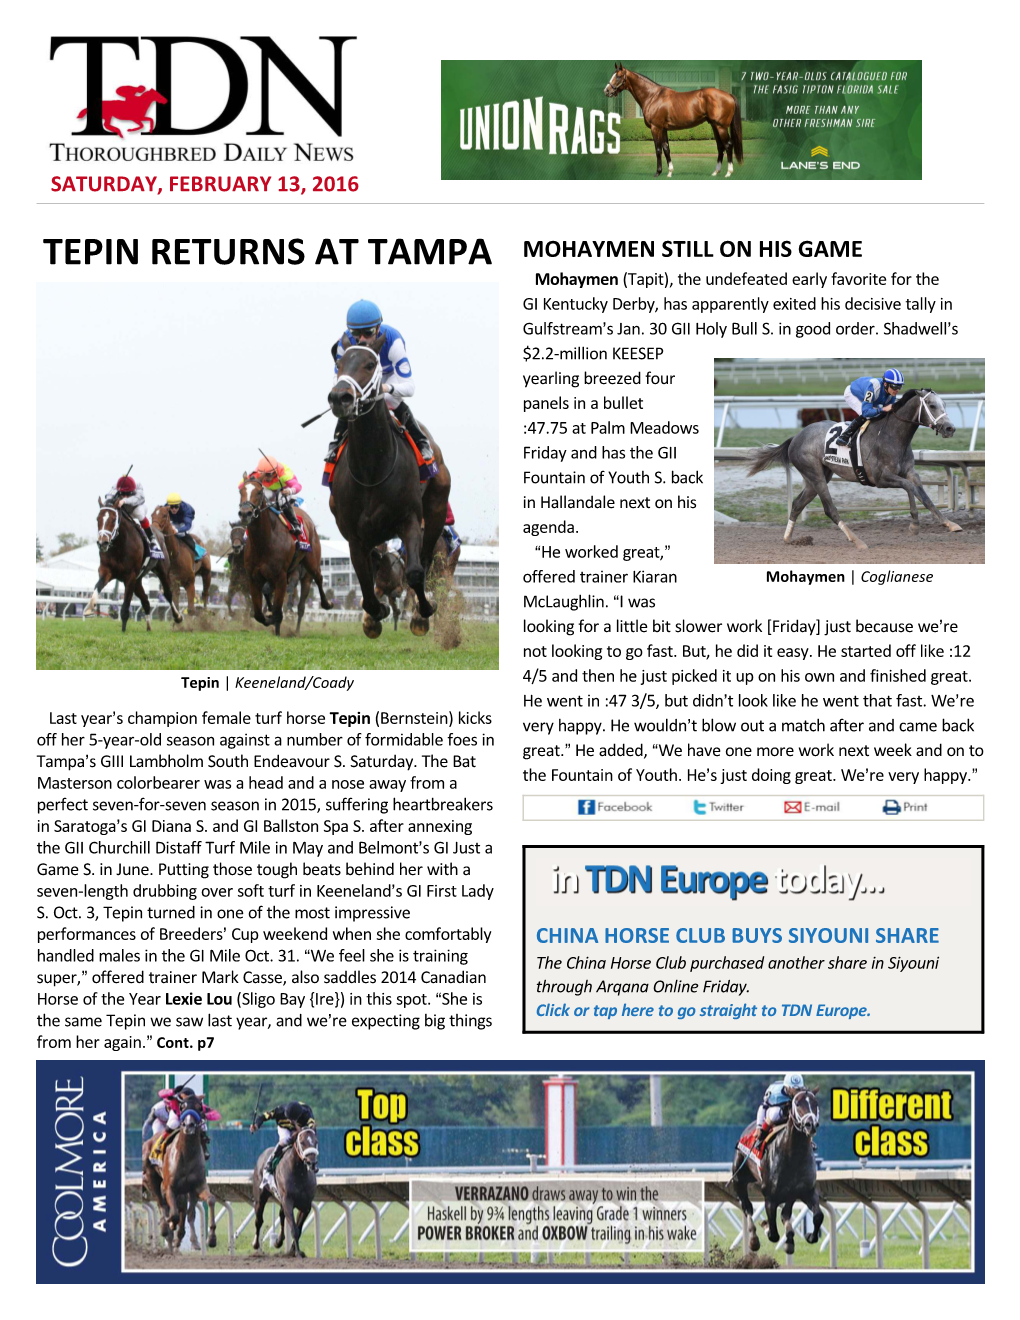 Tepin Returns at Tampa